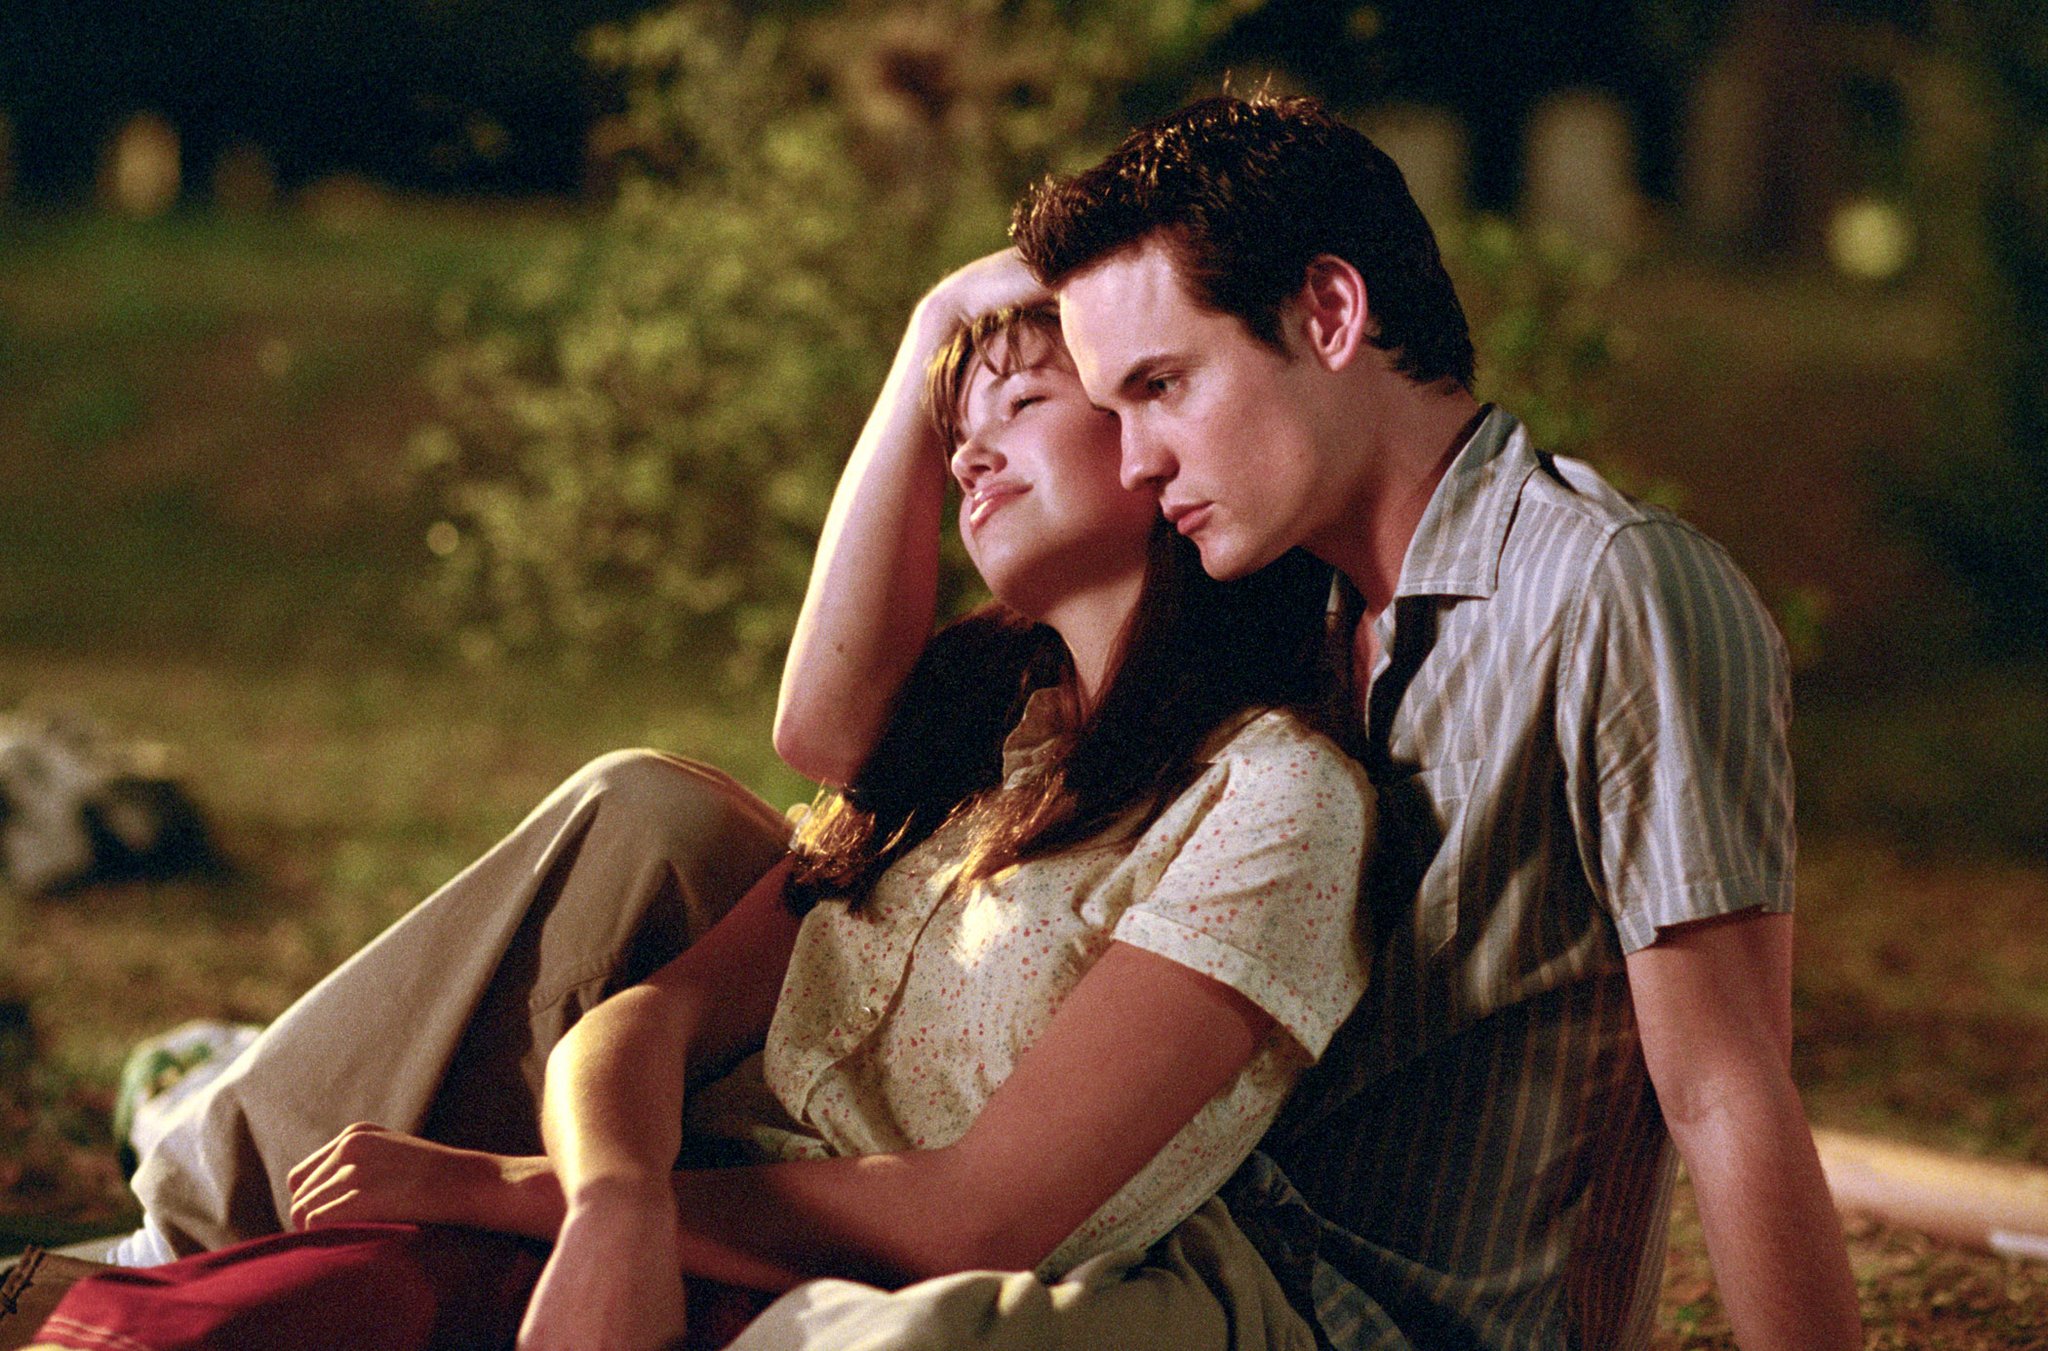 11 საუკეთესო ფილმი საზაფხულო სიყვარულის შესახებ - ჩაუჯექით